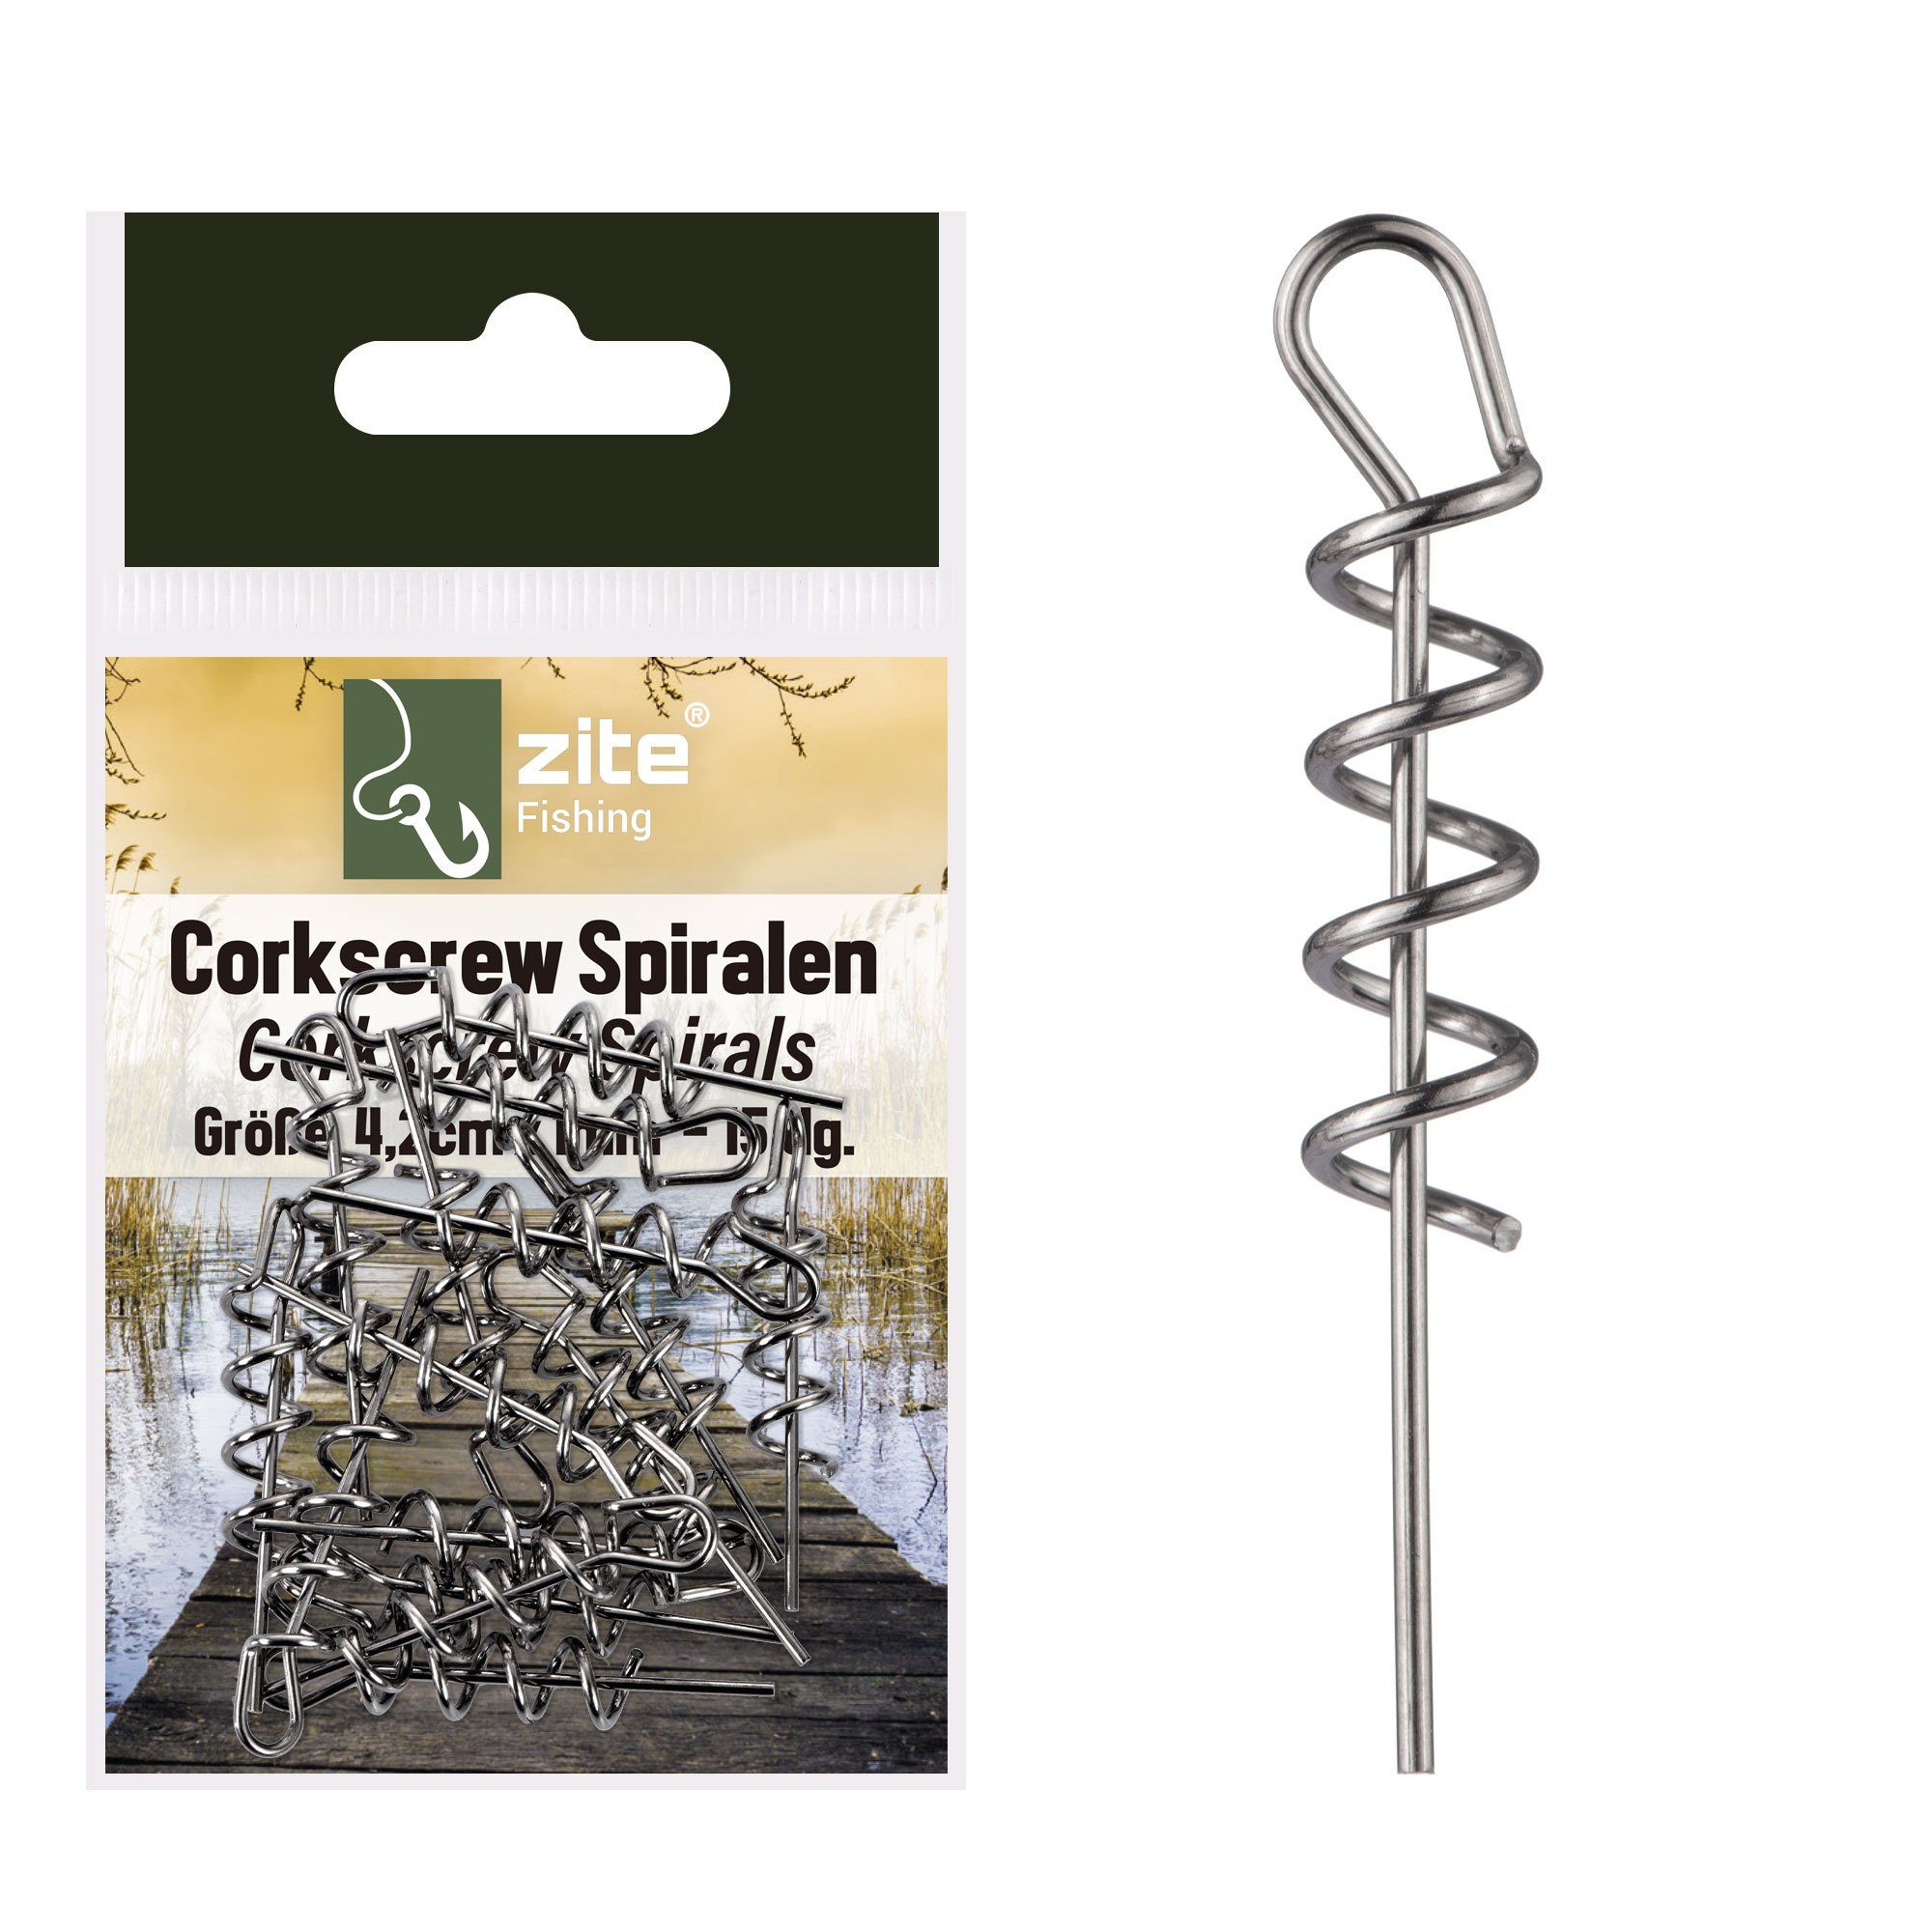 Zite Angelwirbel Cork-Screw Spiralen Softbait-Montage 15 Stück 4,2cm x 1mm